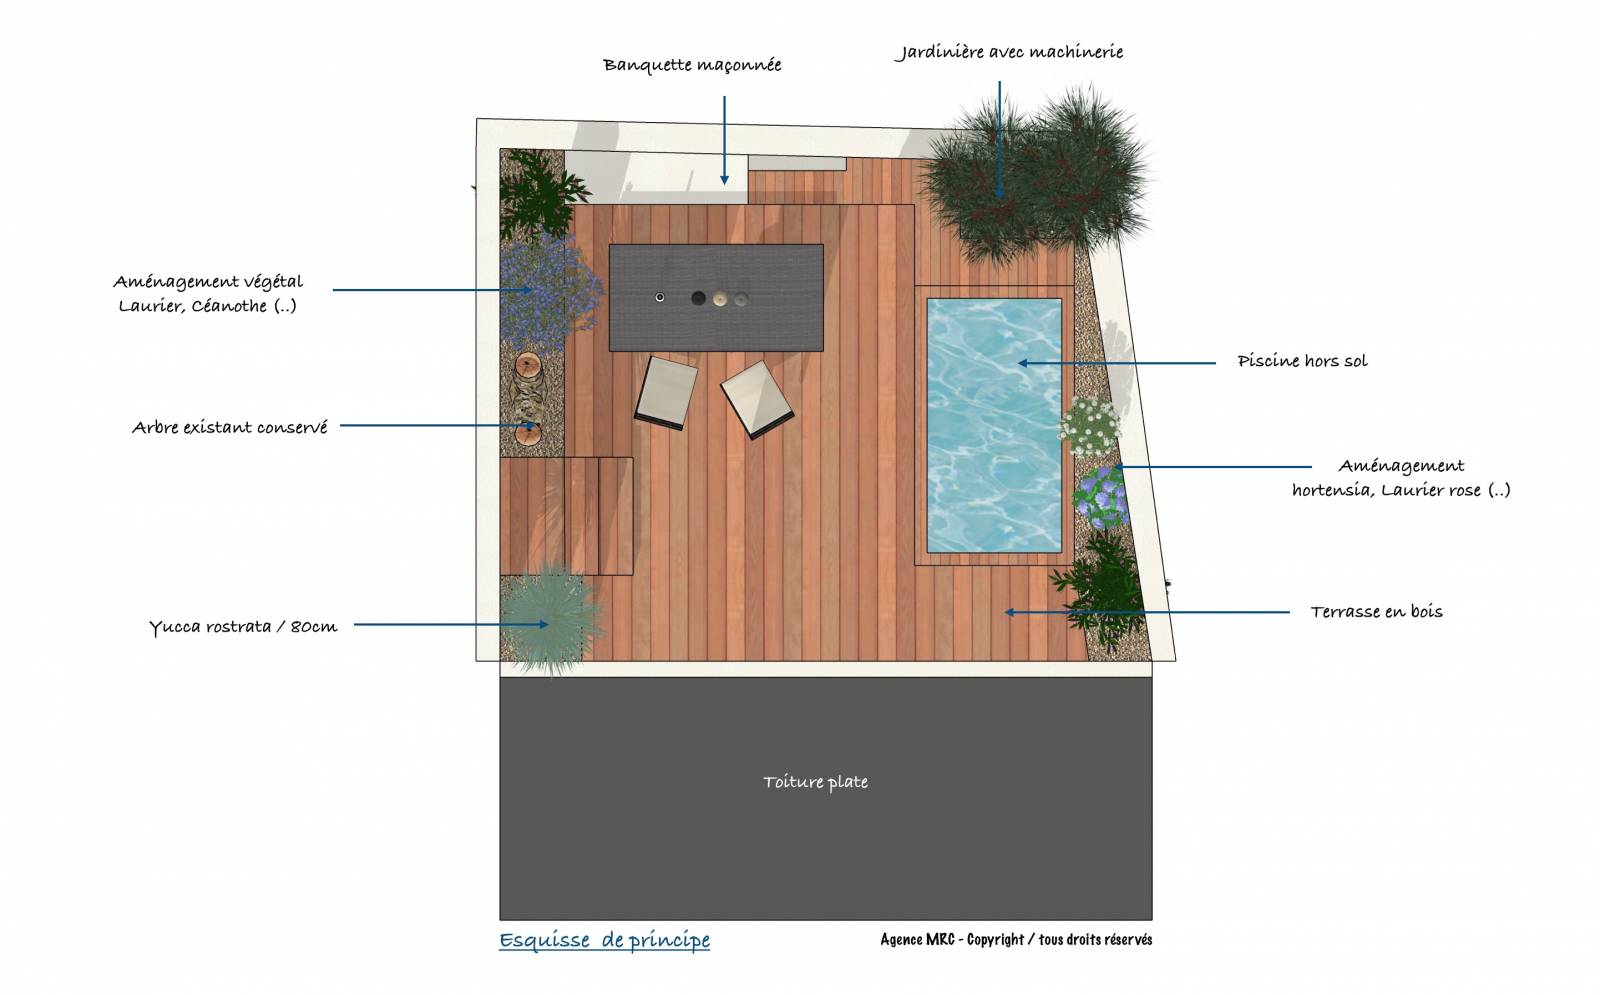 Architecte Paysagiste Marseille 13008 pour aménagement jardin, terrasses bois et bassin moins de 10m2